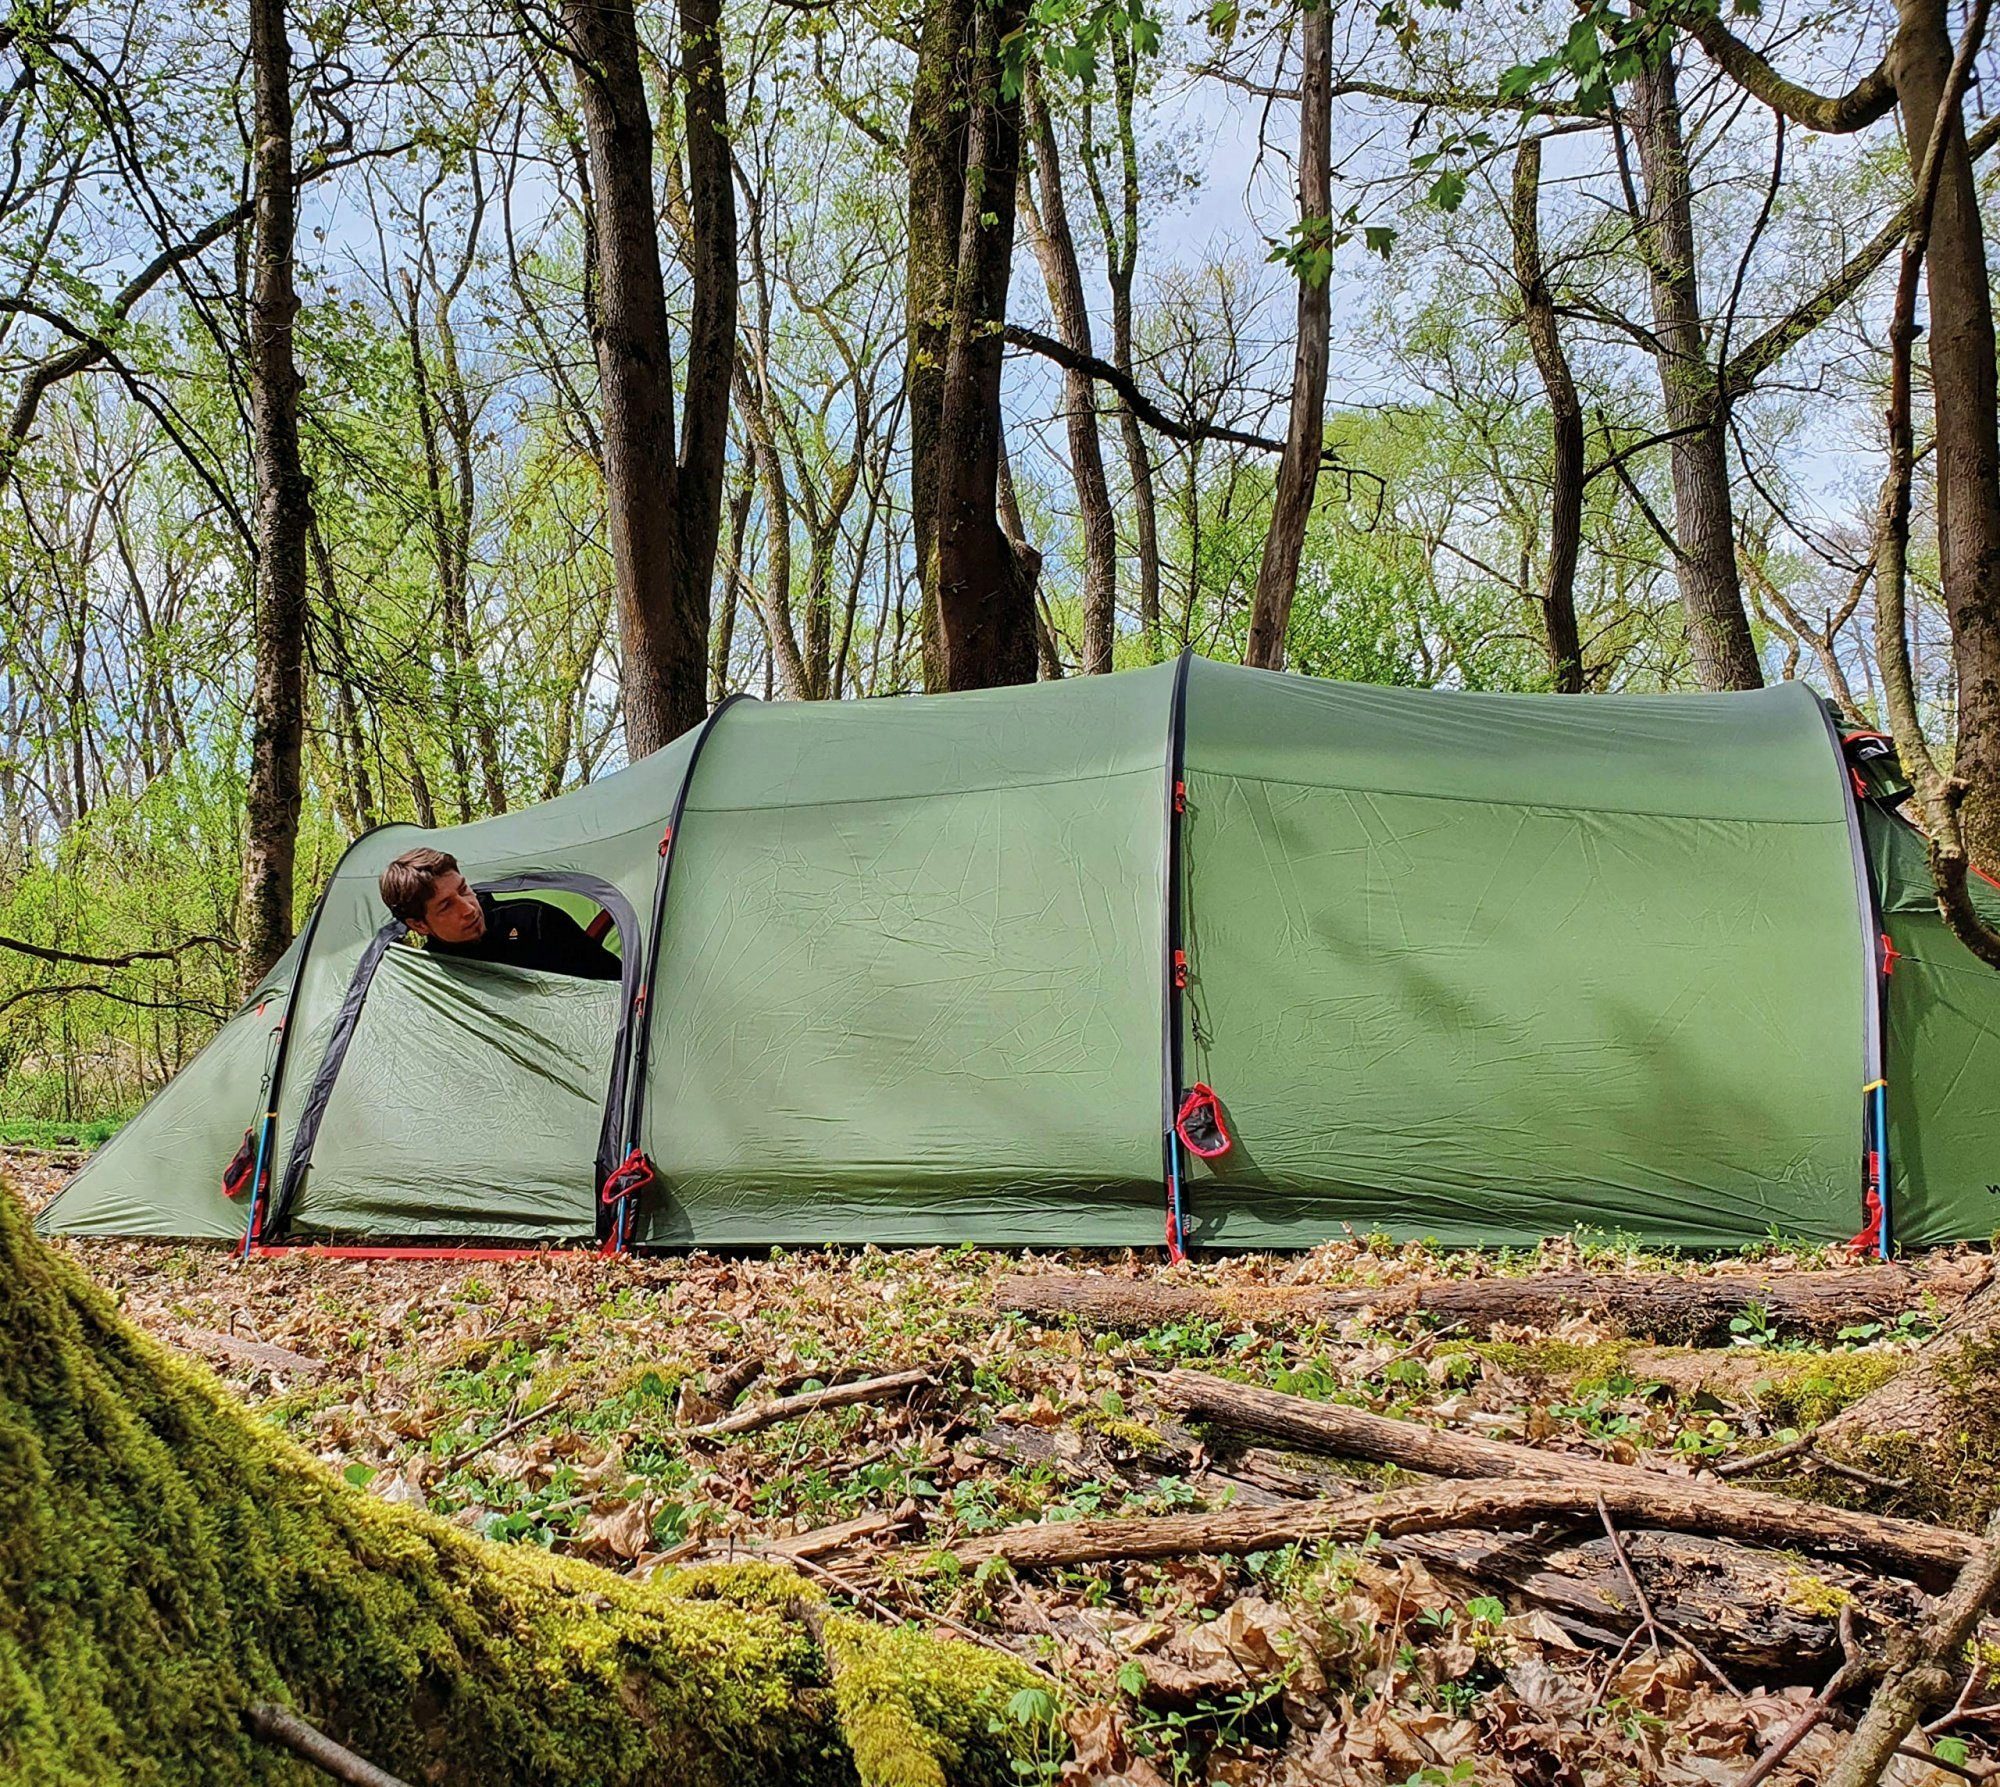 4 4 Jahreszeiten Endeavour Grün, 4 Biwakzelt Tents Wechsel - Personen: Expeditionszelt - Personen